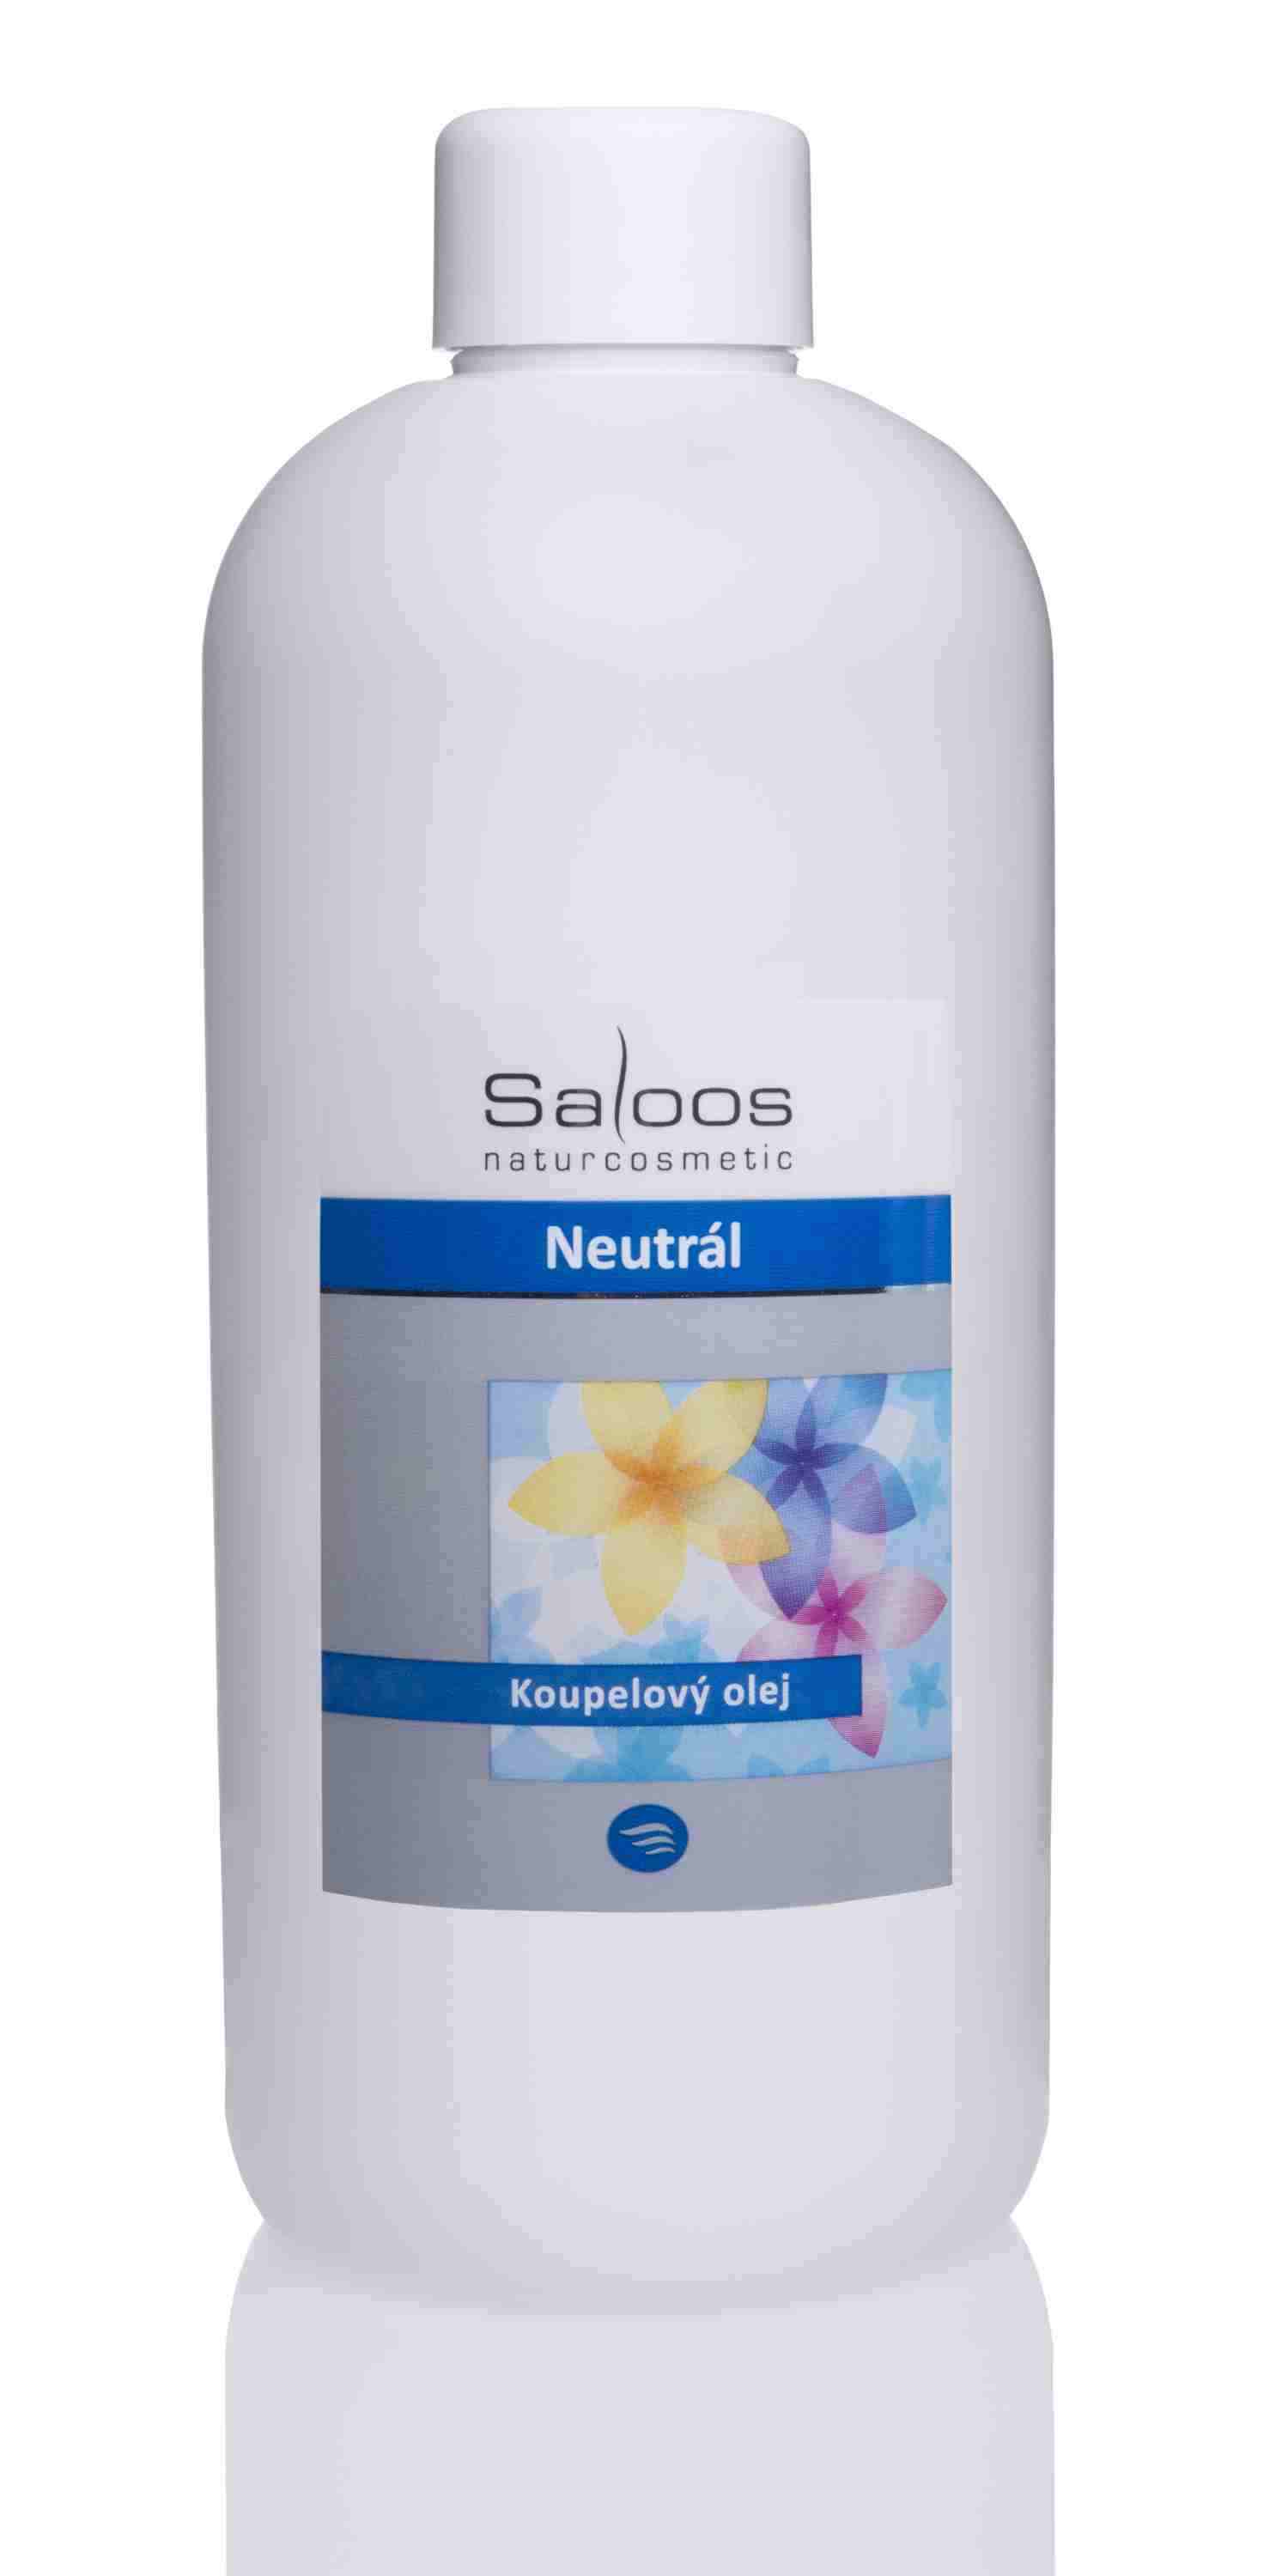 Saloos Neutrální - koupelový olej Balení: 500 ml